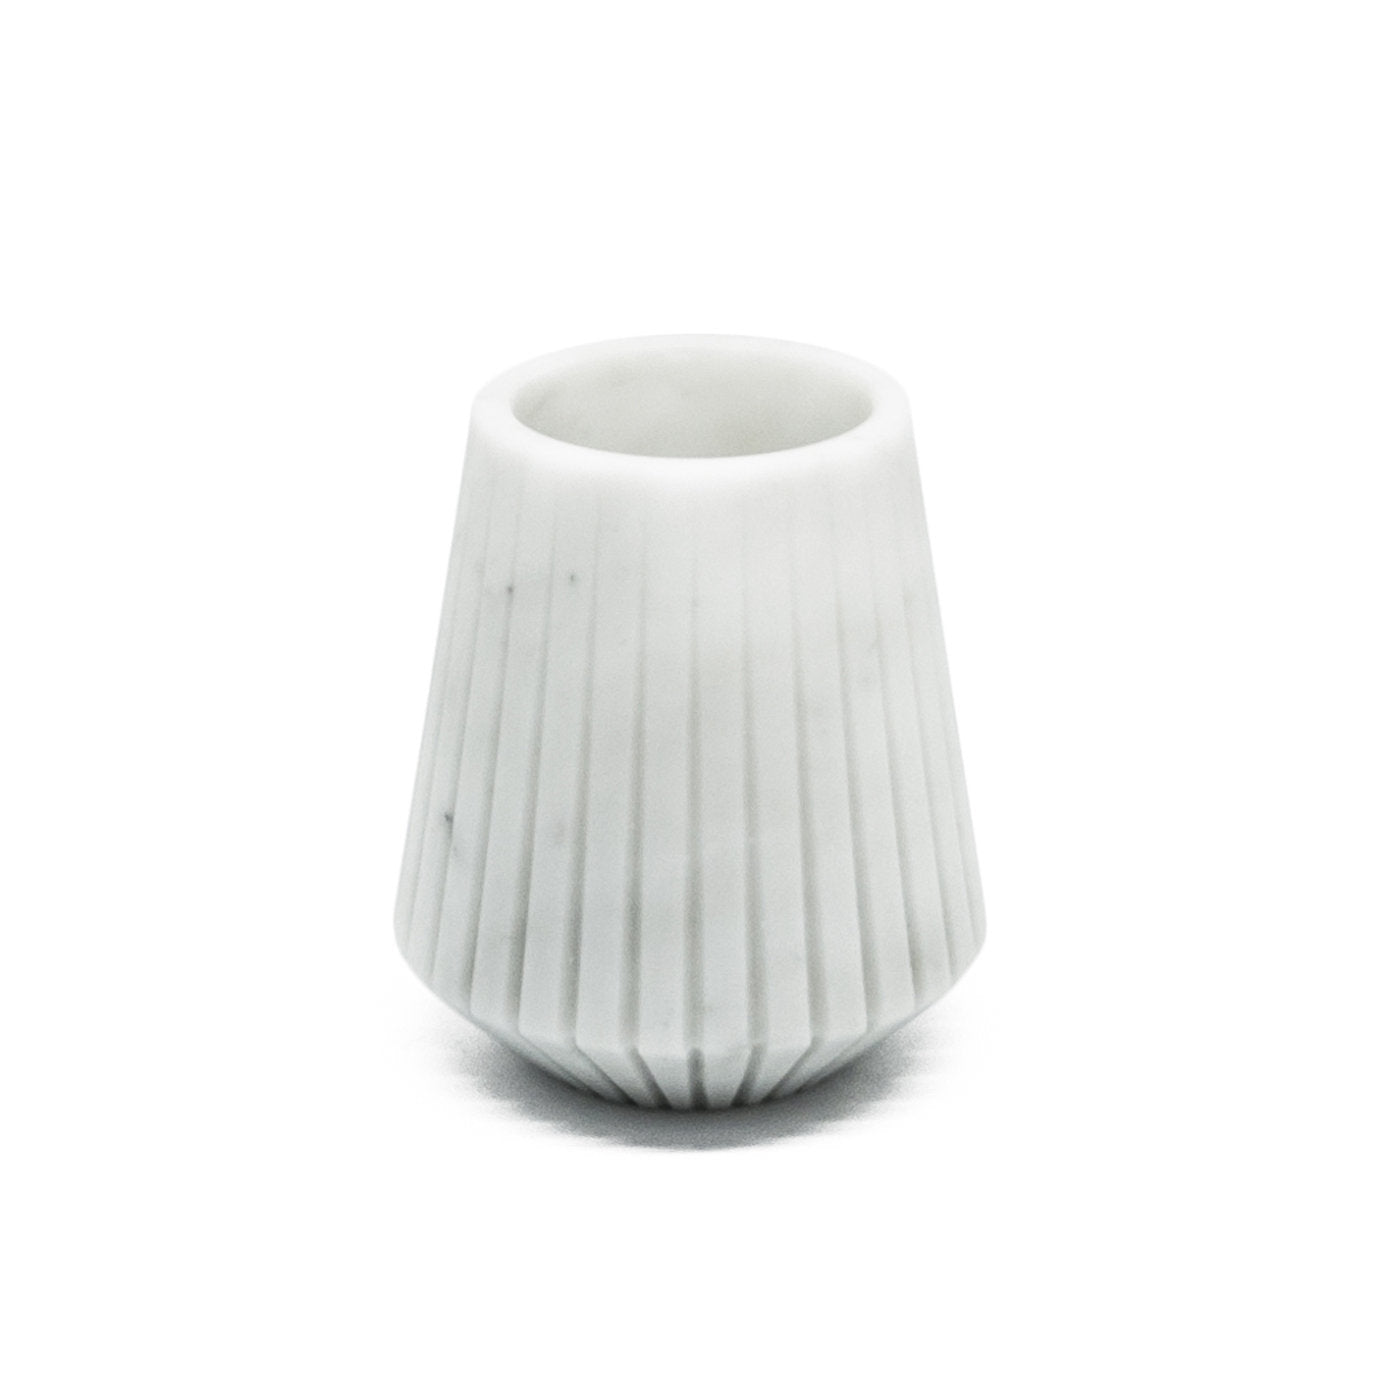 White Carrara Marble Low Vase by Jacopo Simonetti - Alternative view 3